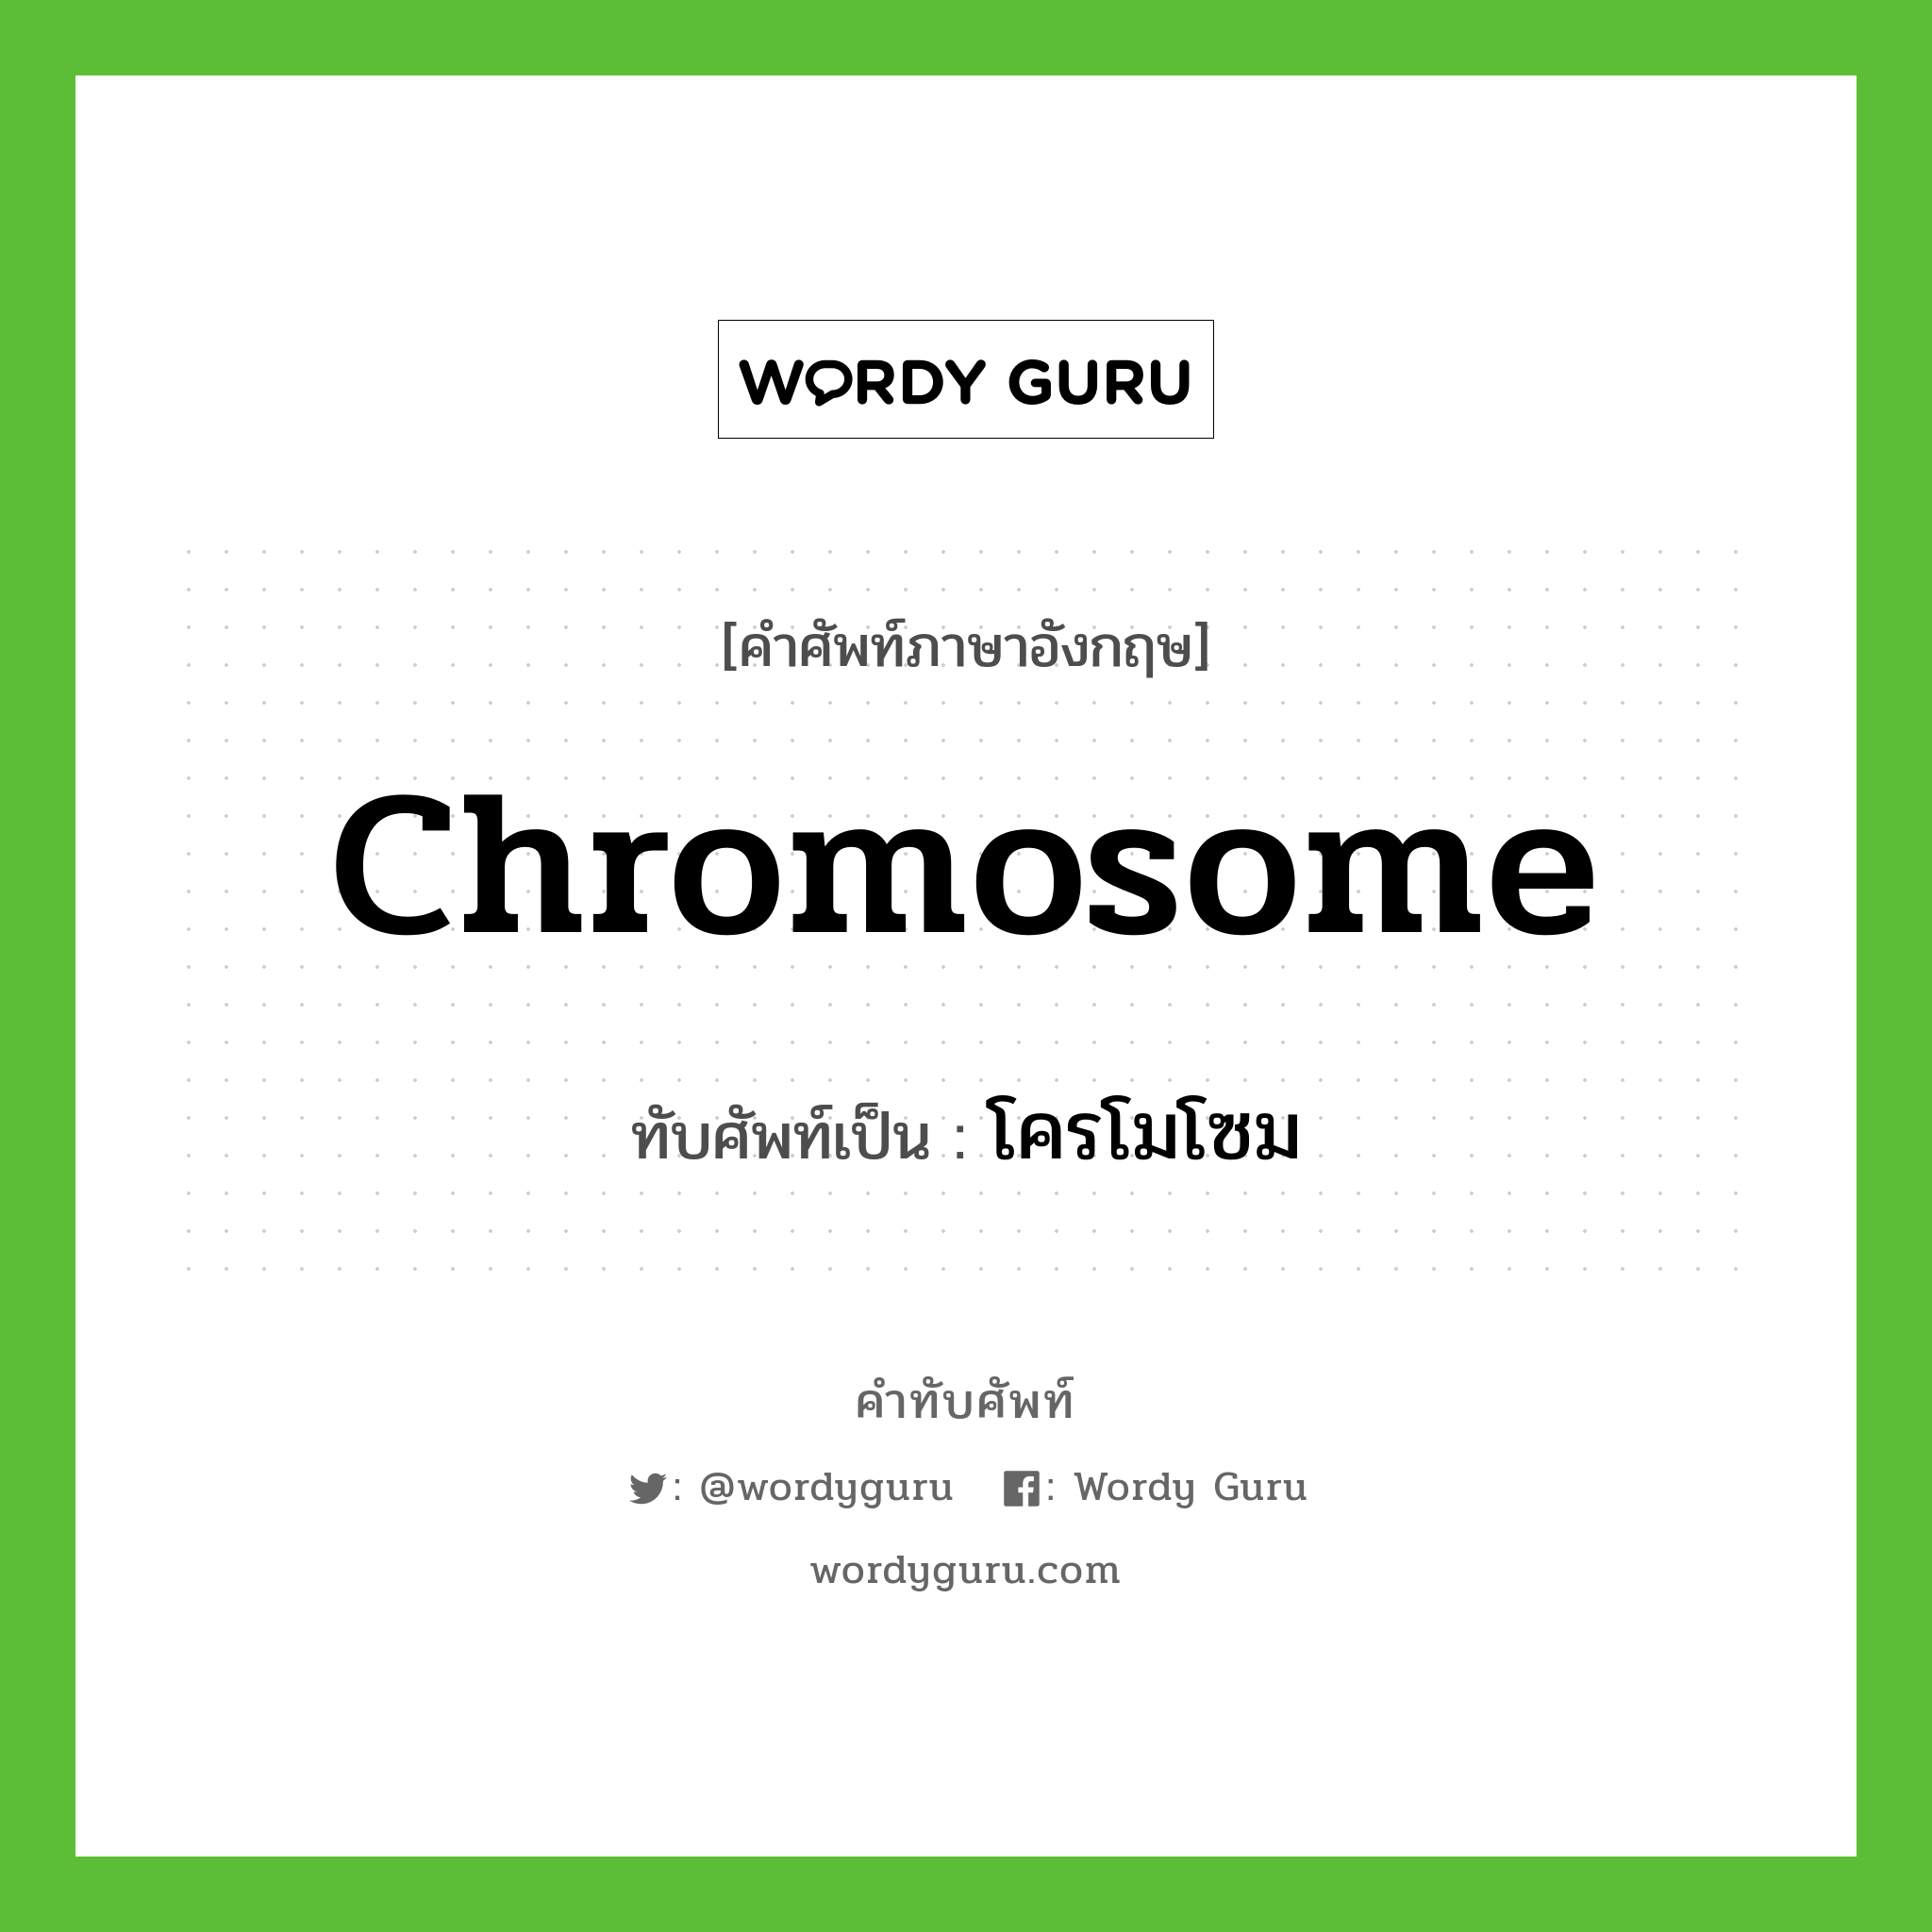 โครโมโซม เขียนอย่างไร?, คำศัพท์ภาษาอังกฤษ โครโมโซม ทับศัพท์เป็น chromosome